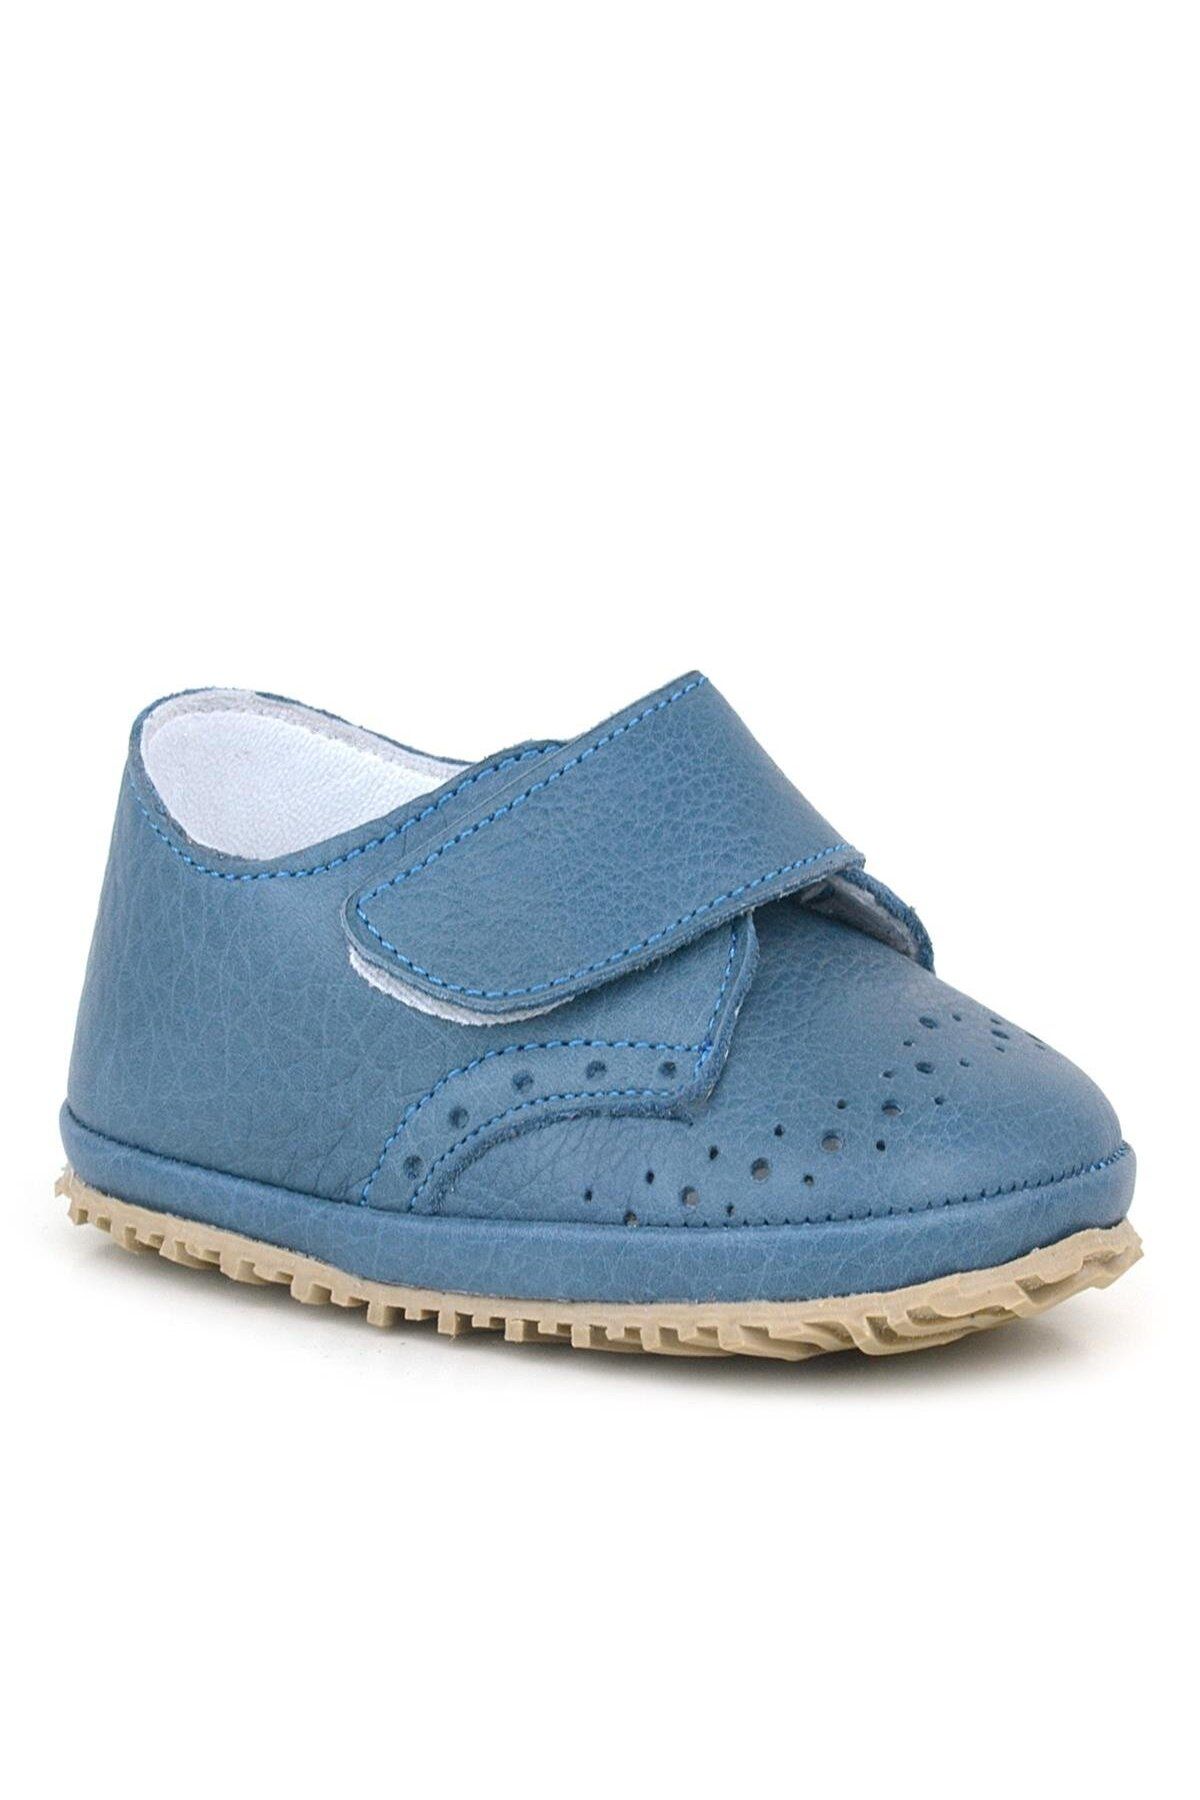 hapshoe Hakiki Deri Lacivert Mavi Cırtlı Bebek Patik Ayakkabı